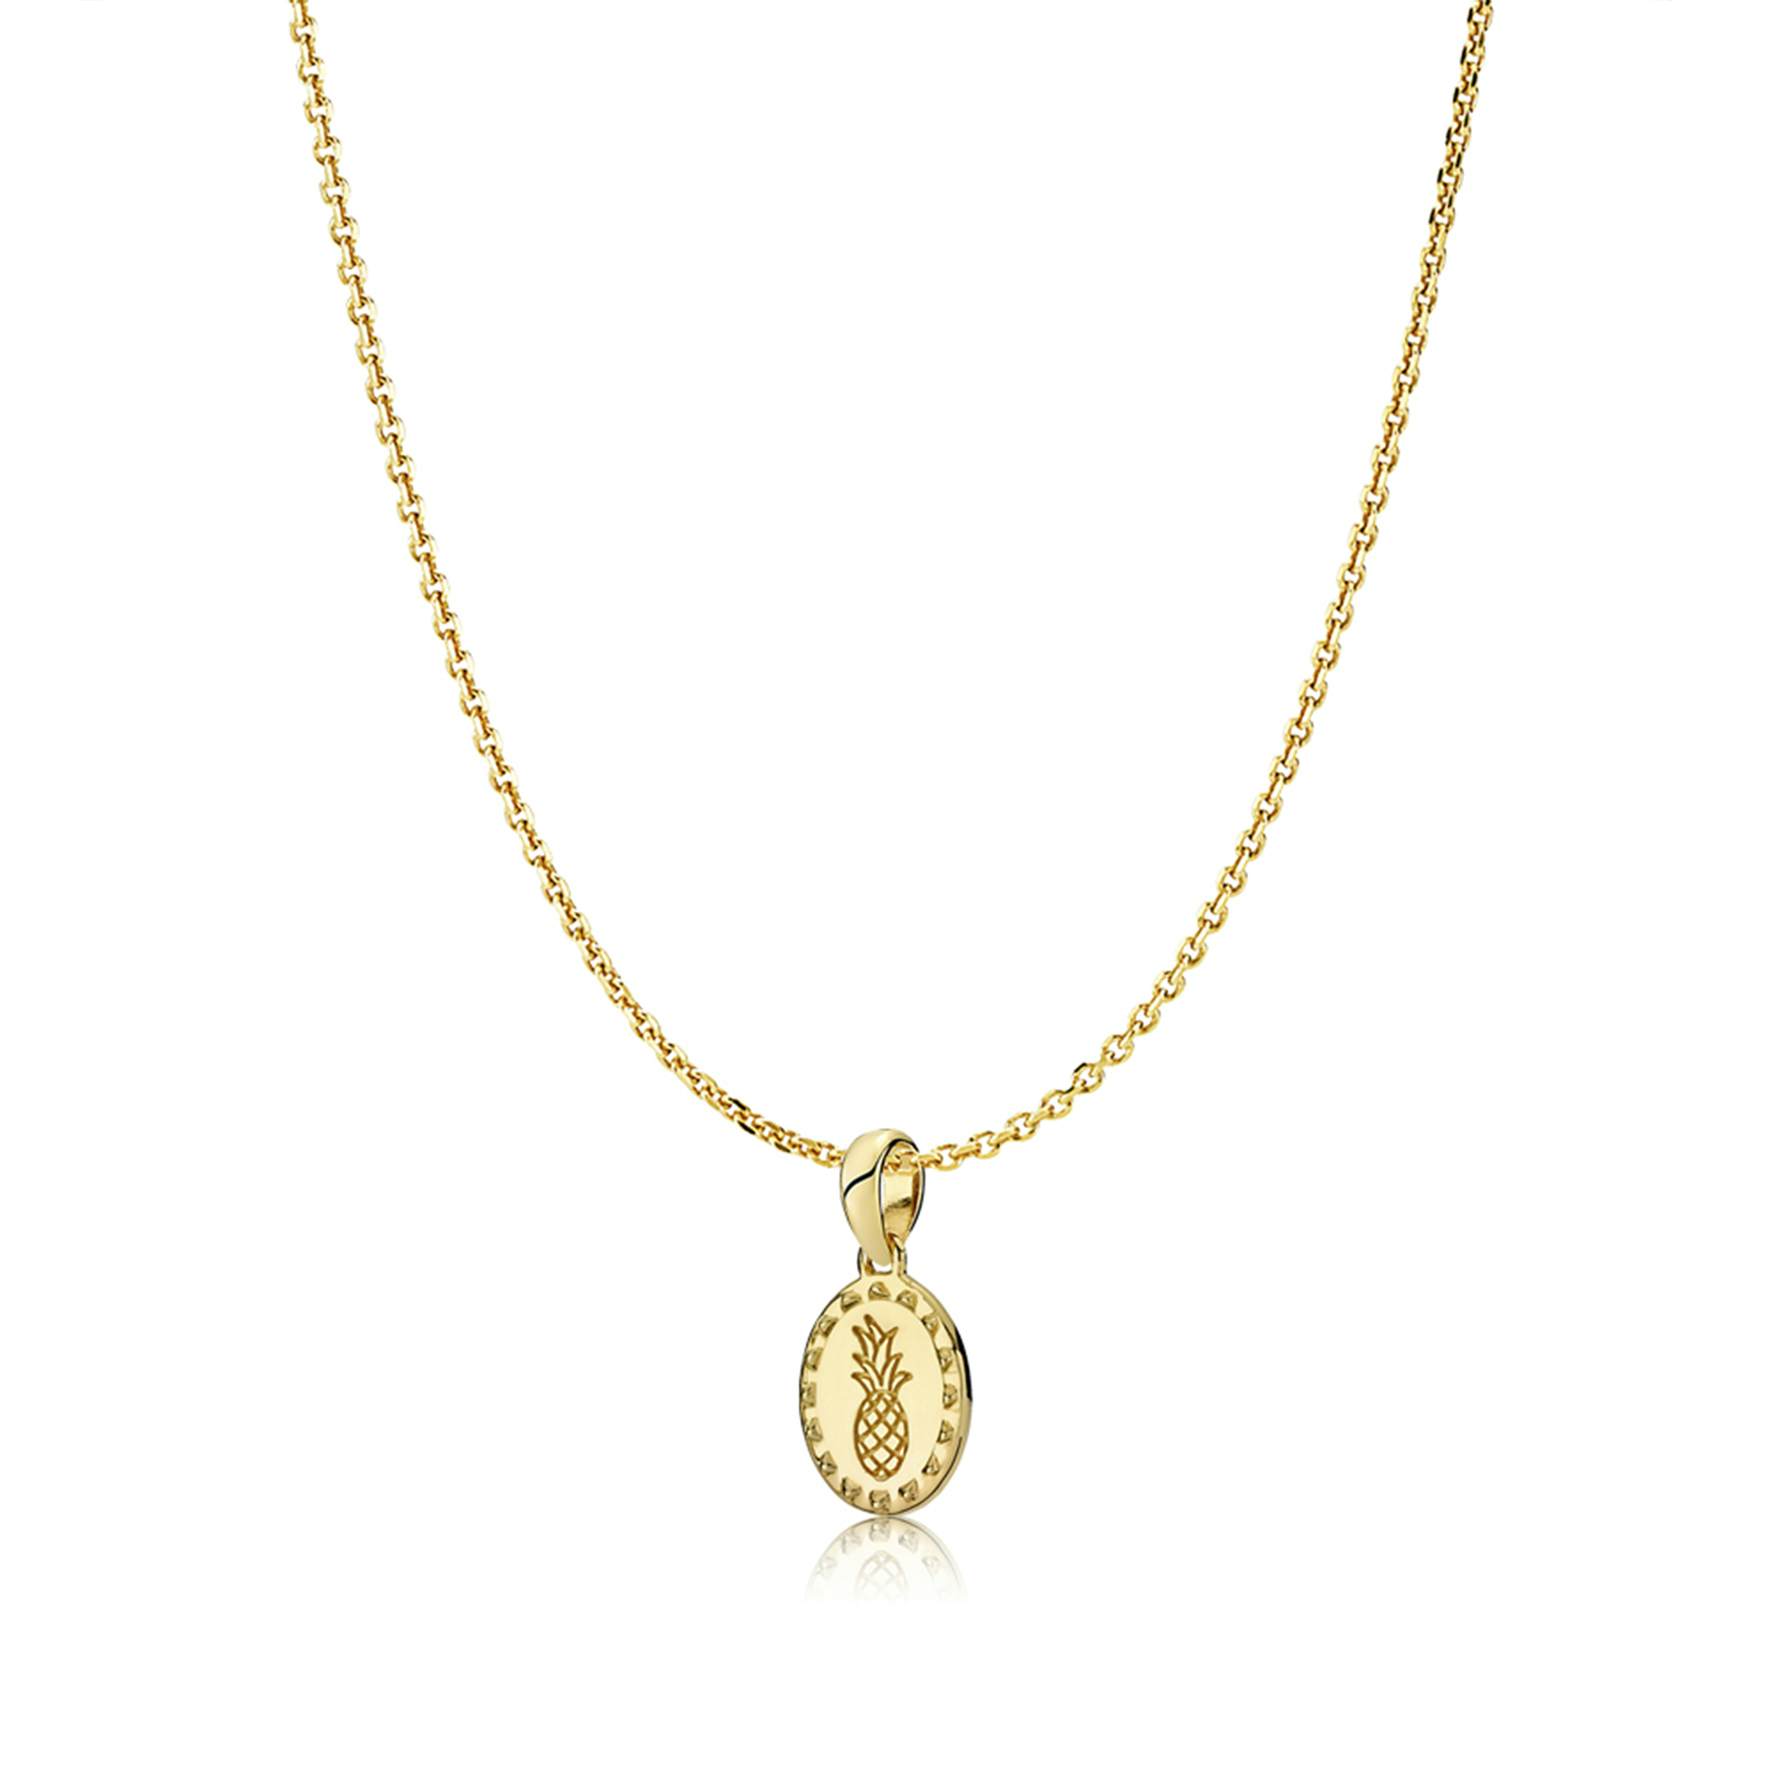 Anna By Sistie Round Pendant Necklace von Sistie in Vergoldet-Silber Sterling 925